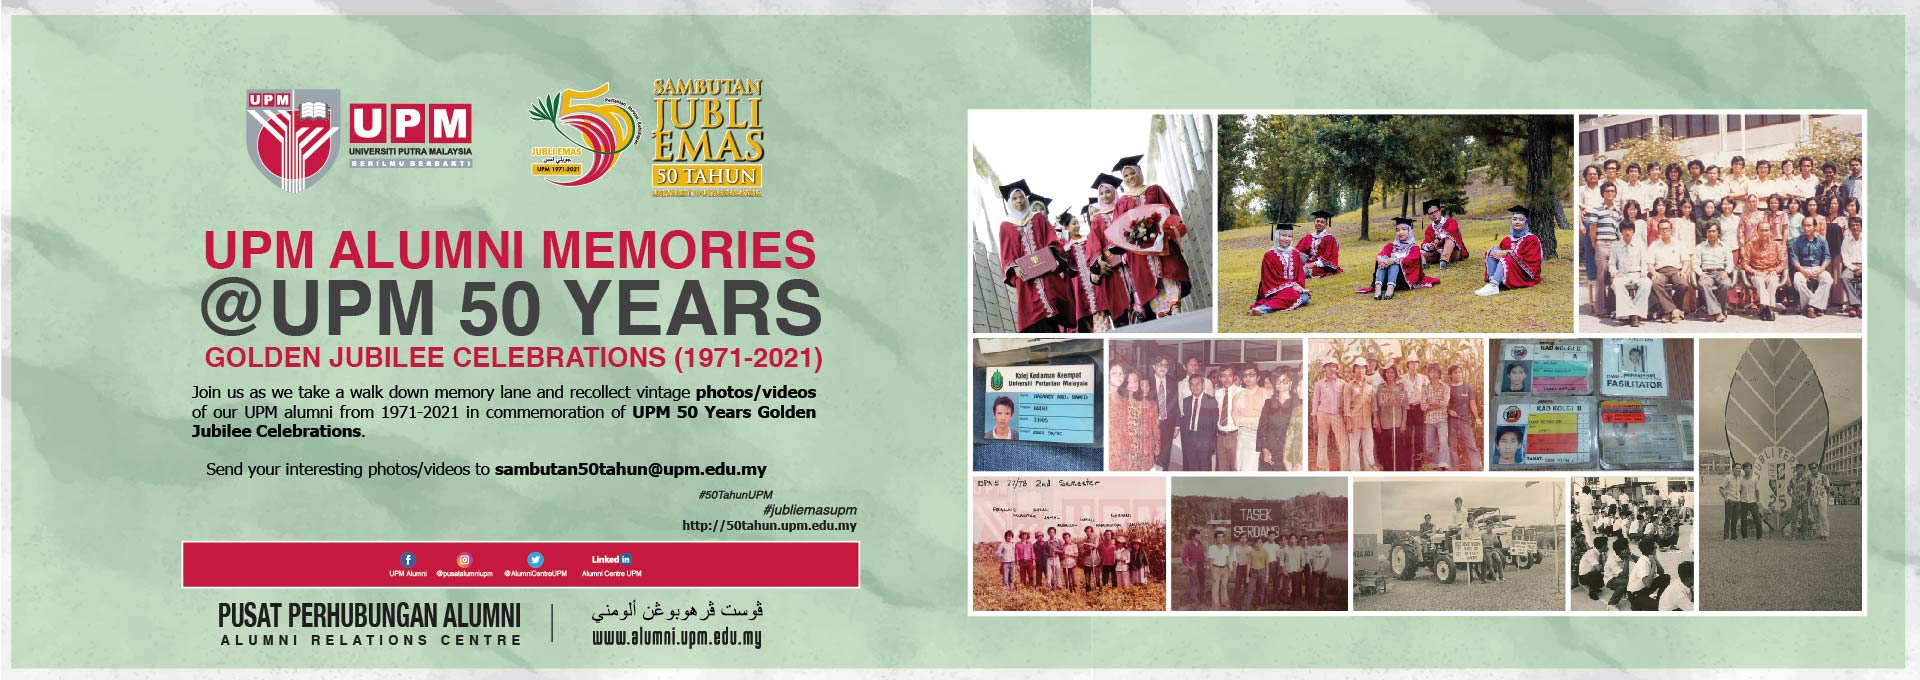 UPM ALUMNI MEMORIES @UPM 50 YEARS